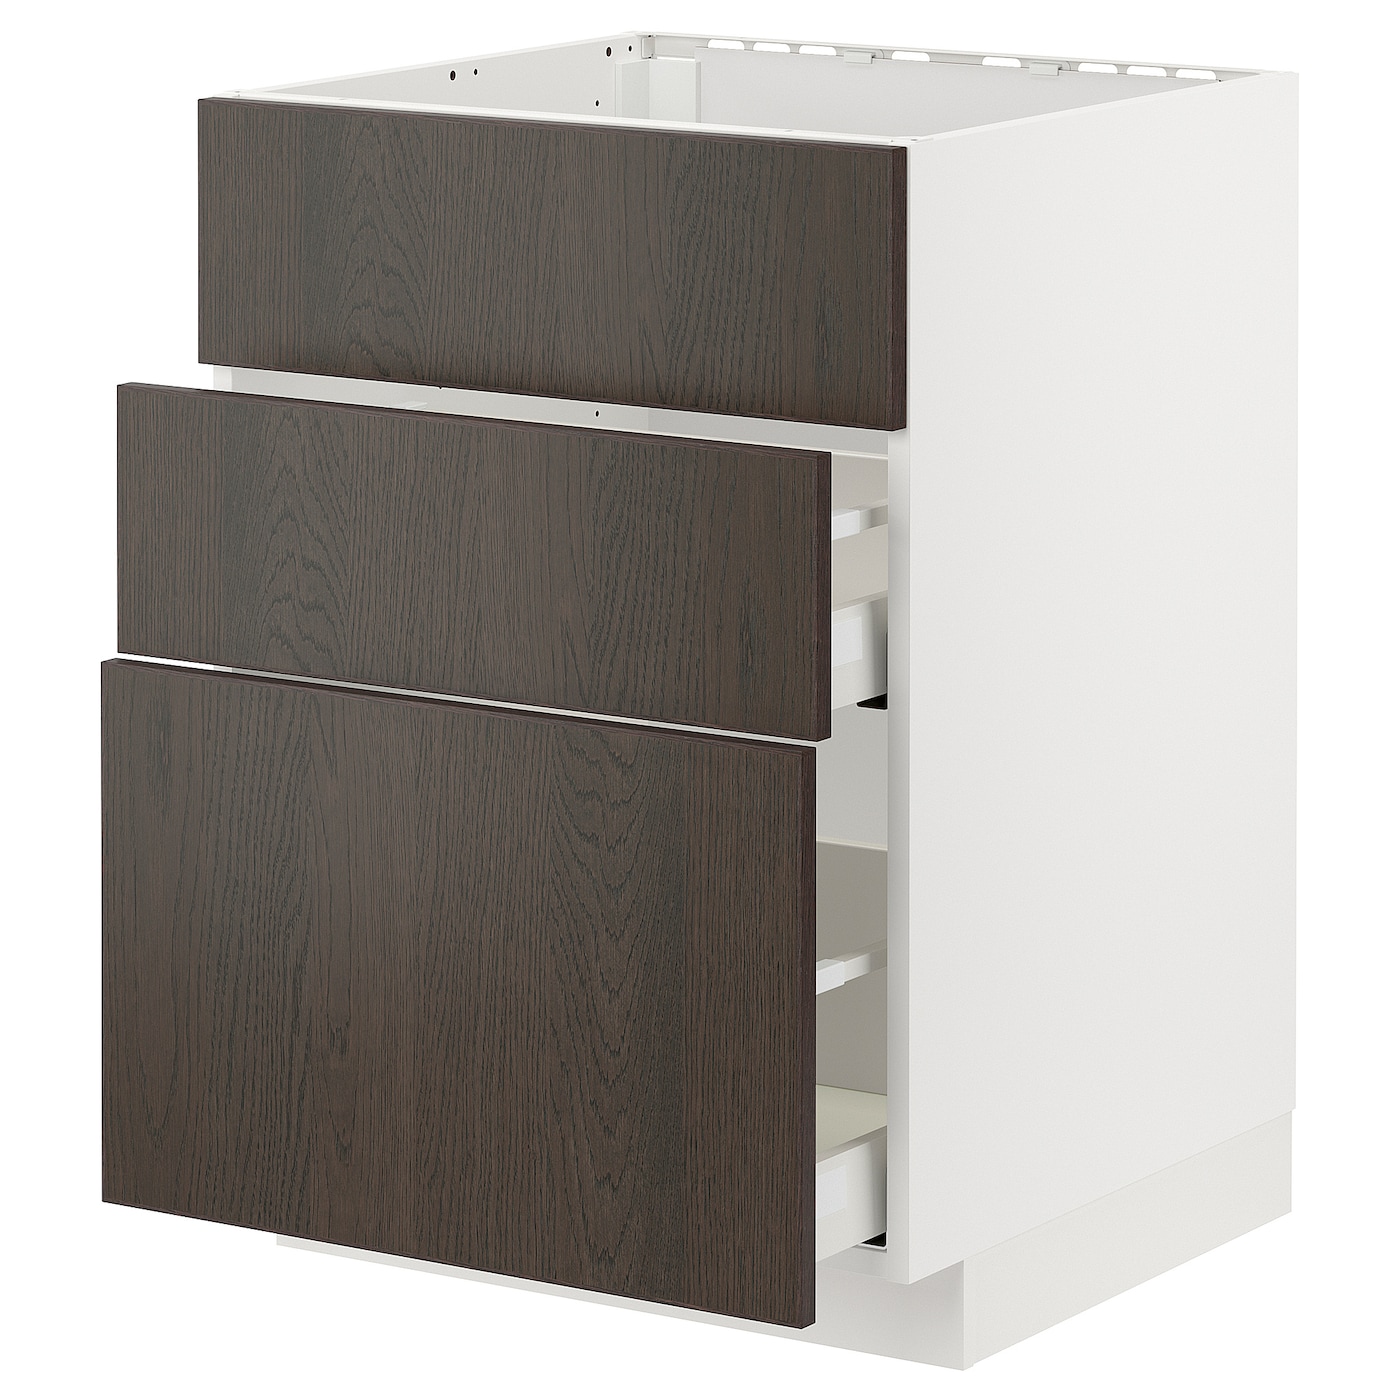 Напольный шкаф - METOD / MAXIMERA IKEA/ МЕТОД/ МАКСИМЕРА ИКЕА,  80х60 см, белый/коричневый